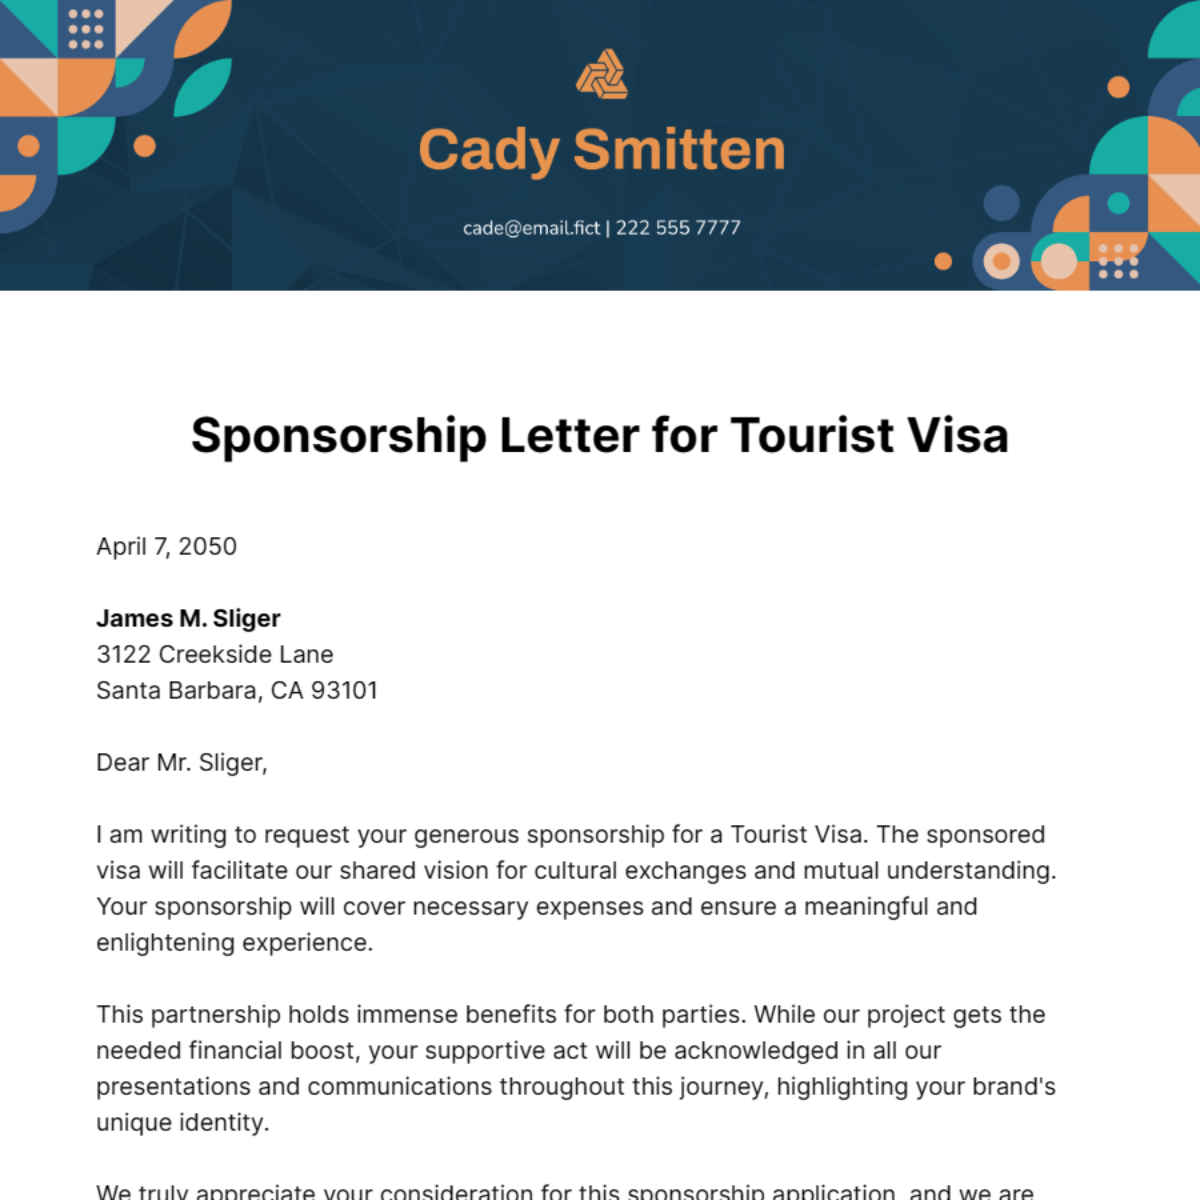 Sponsorship Letter for Tourist Visa Template